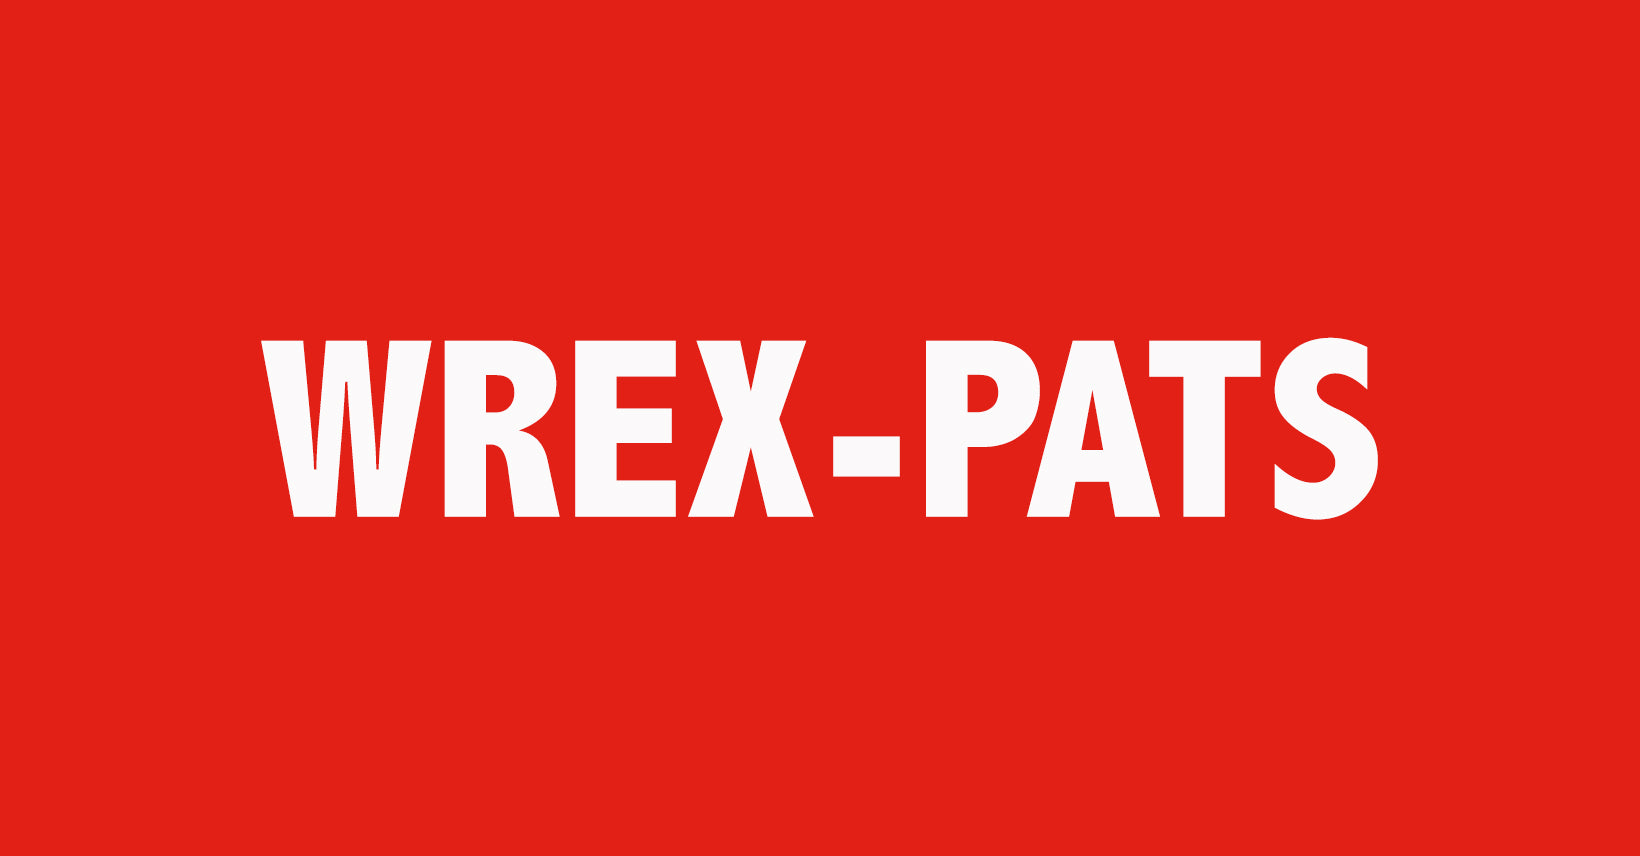 Meet the Wrex-Pats